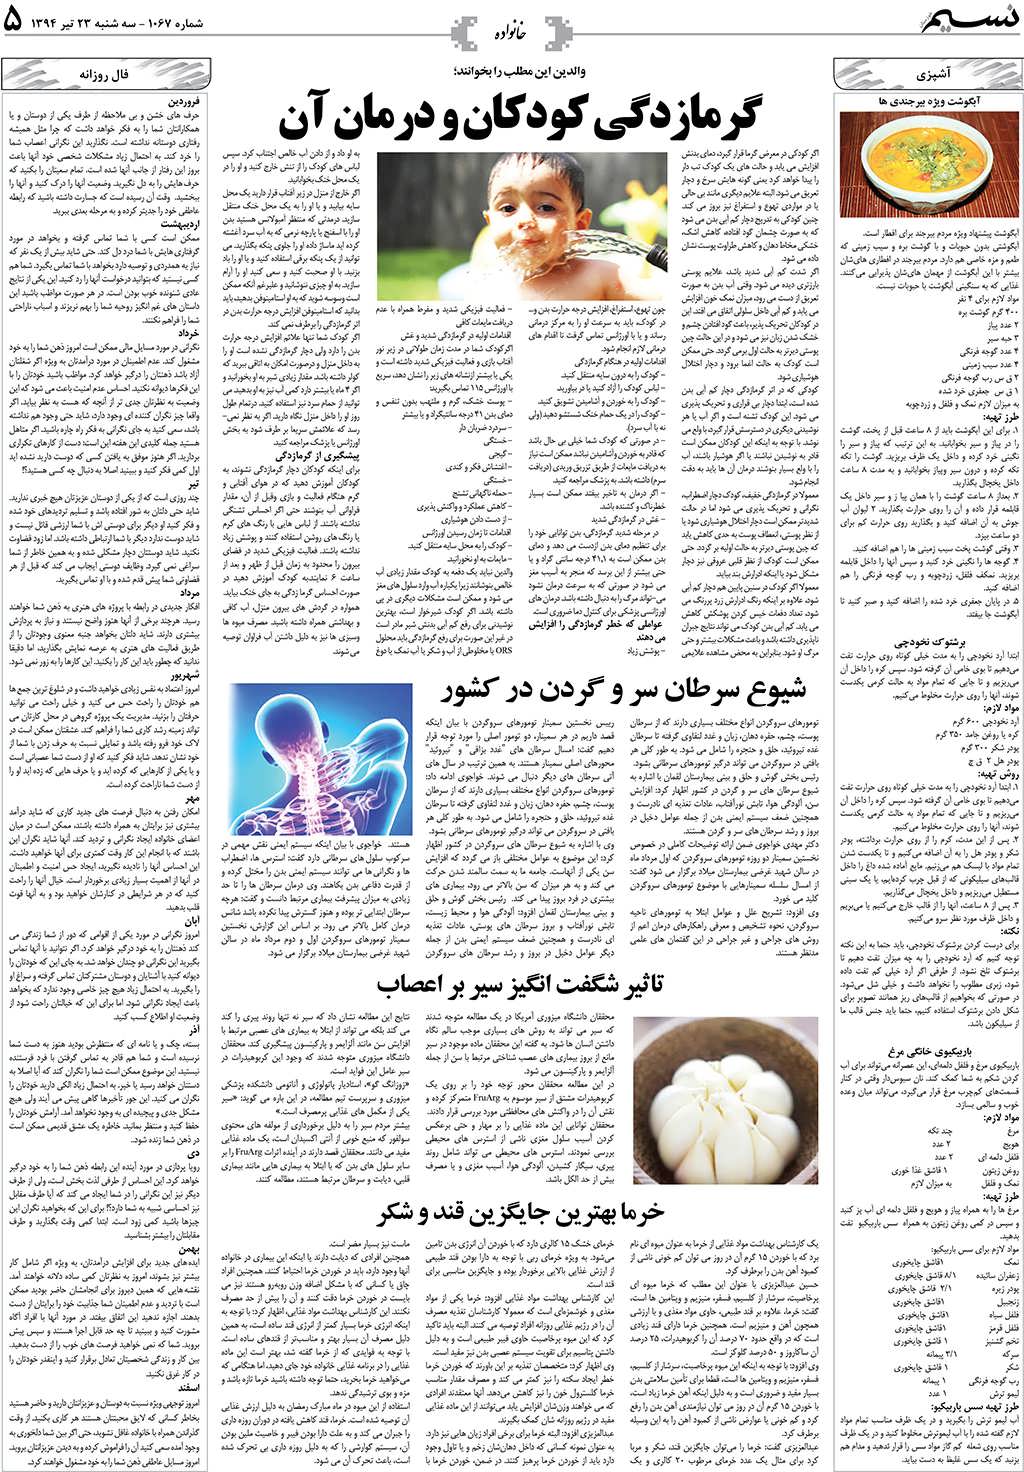 صفحه خانواده روزنامه نسیم شماره 1067